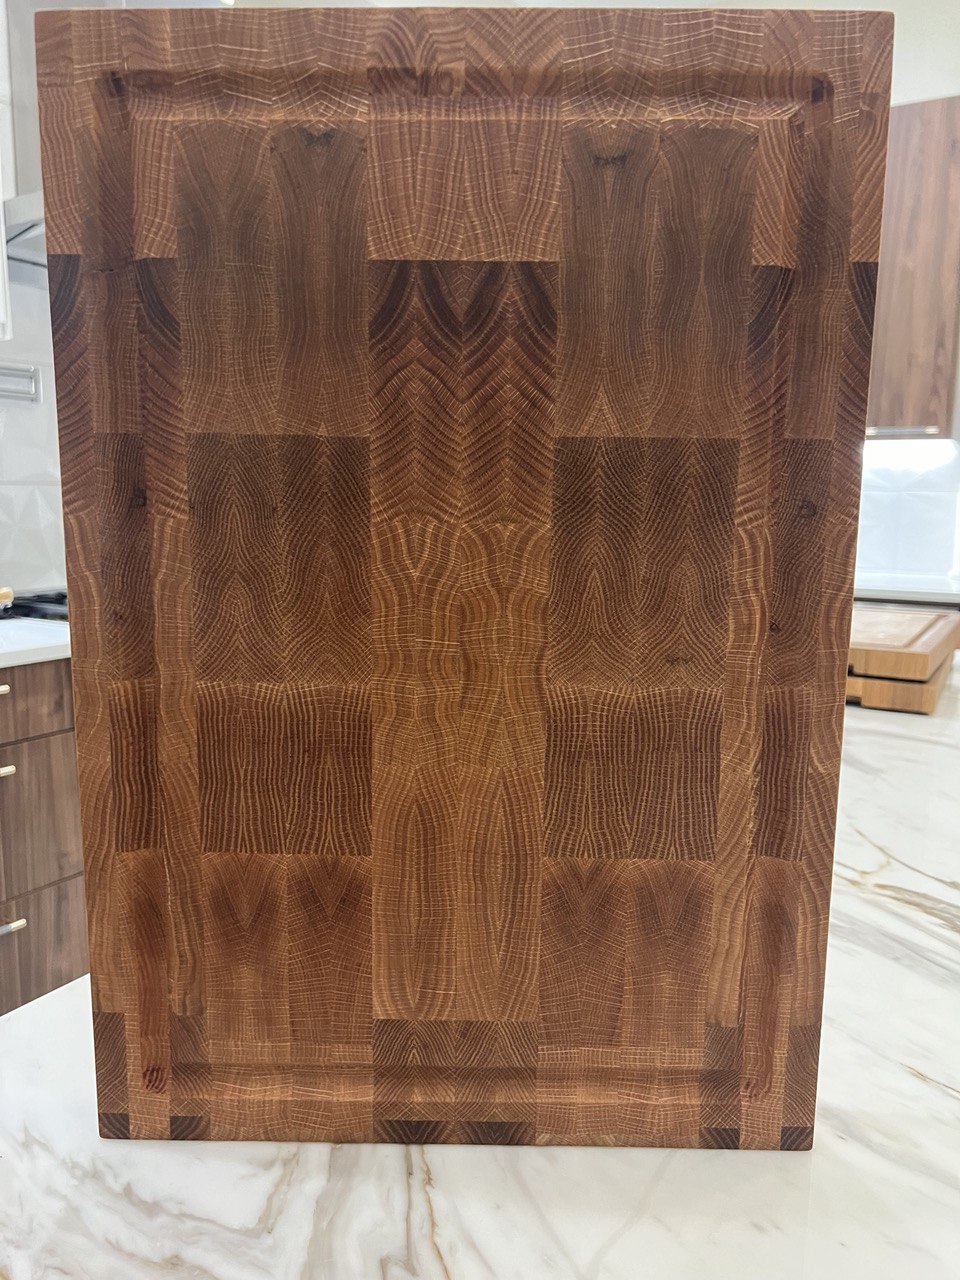 Red Oak Cutting Board